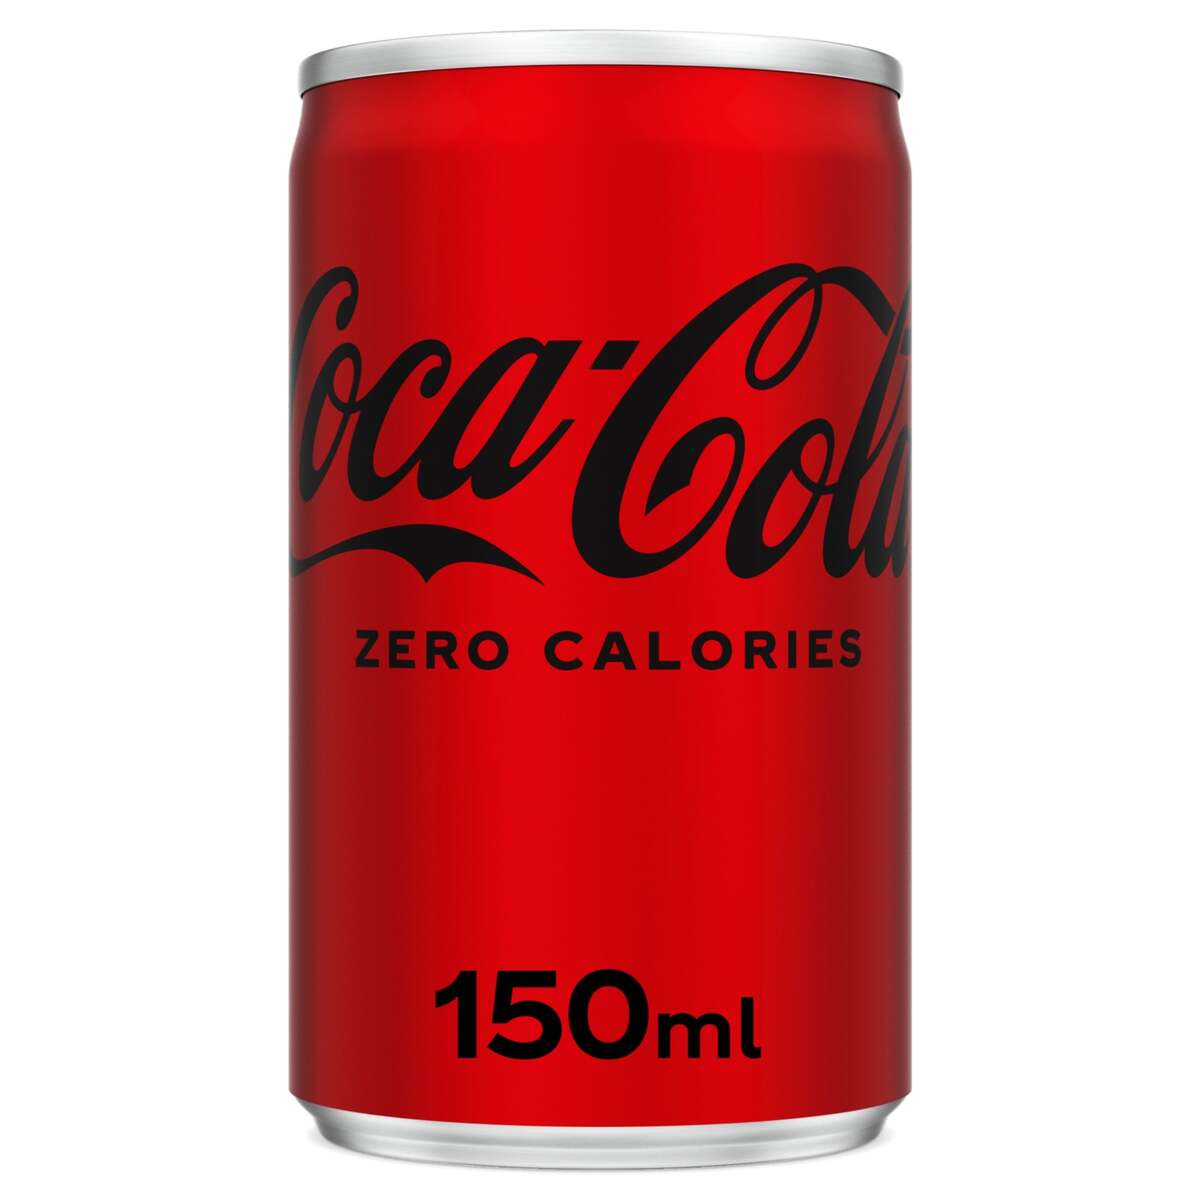 كوكا كولا زيرو 150 مل